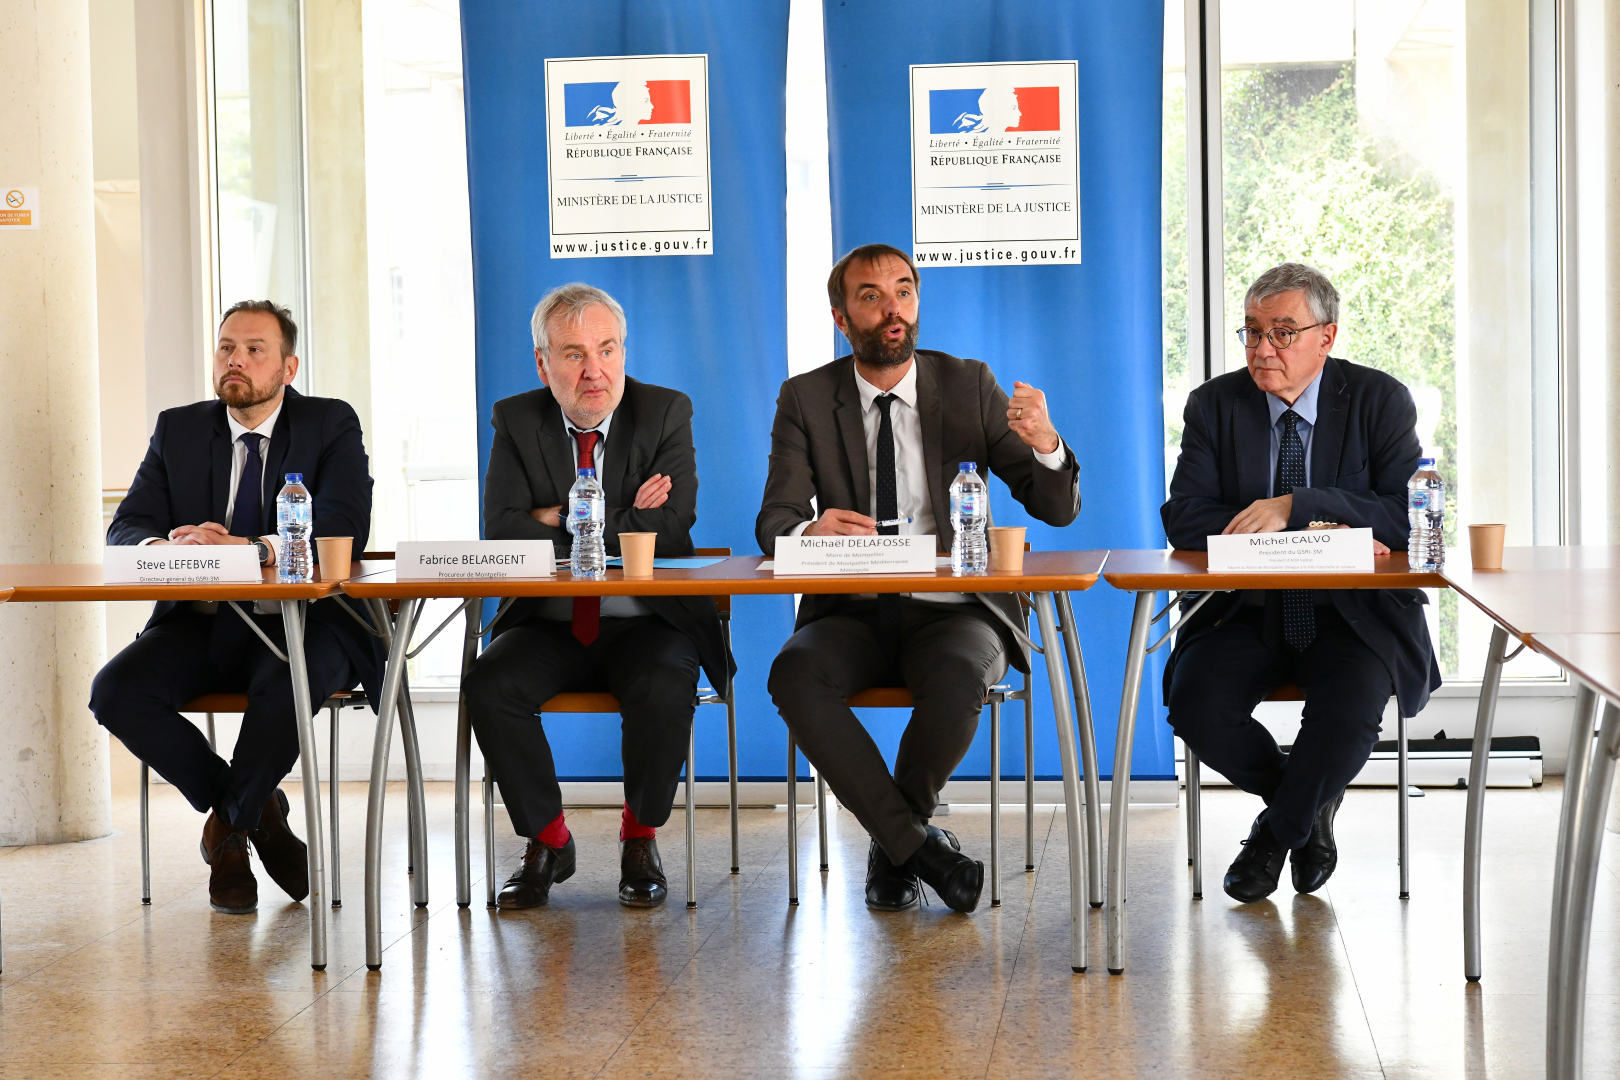 Steve Lefebvre (directeur du GSRI), Fabrice Belargent (procureur), Michaël Delafosse et Michel Calvo (président d'ACM Habitat) lors de la conférence de presse